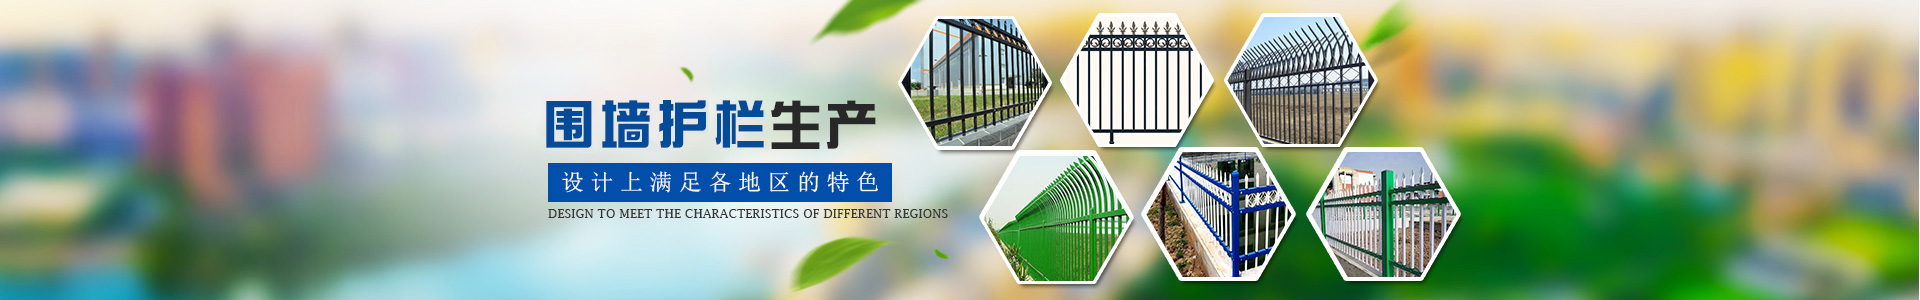 道路护栏|市政护栏|京式护栏|锌钢护栏|河道护栏|围墙护栏|绿化护栏|建筑护栏|PVC护栏-洛阳保众实业有限公司